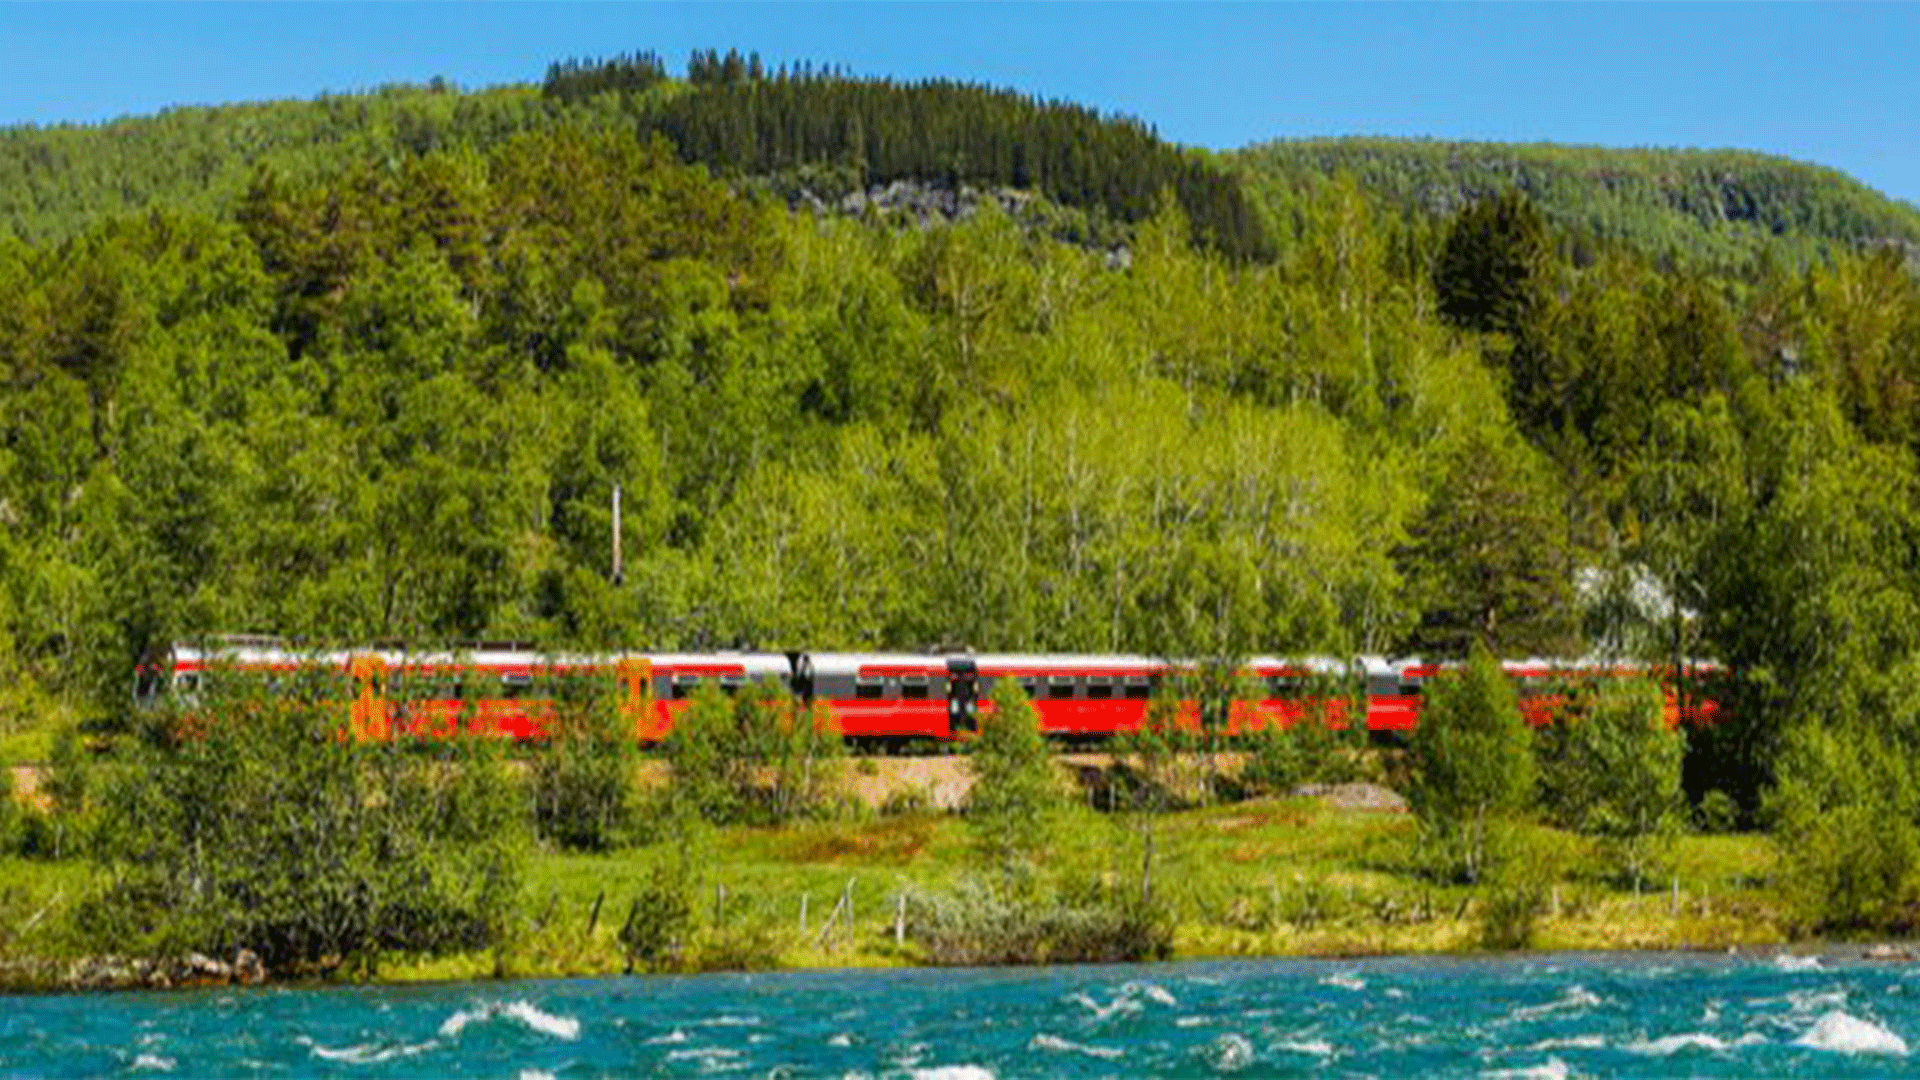 norway-bergen-oslo-railway-summer